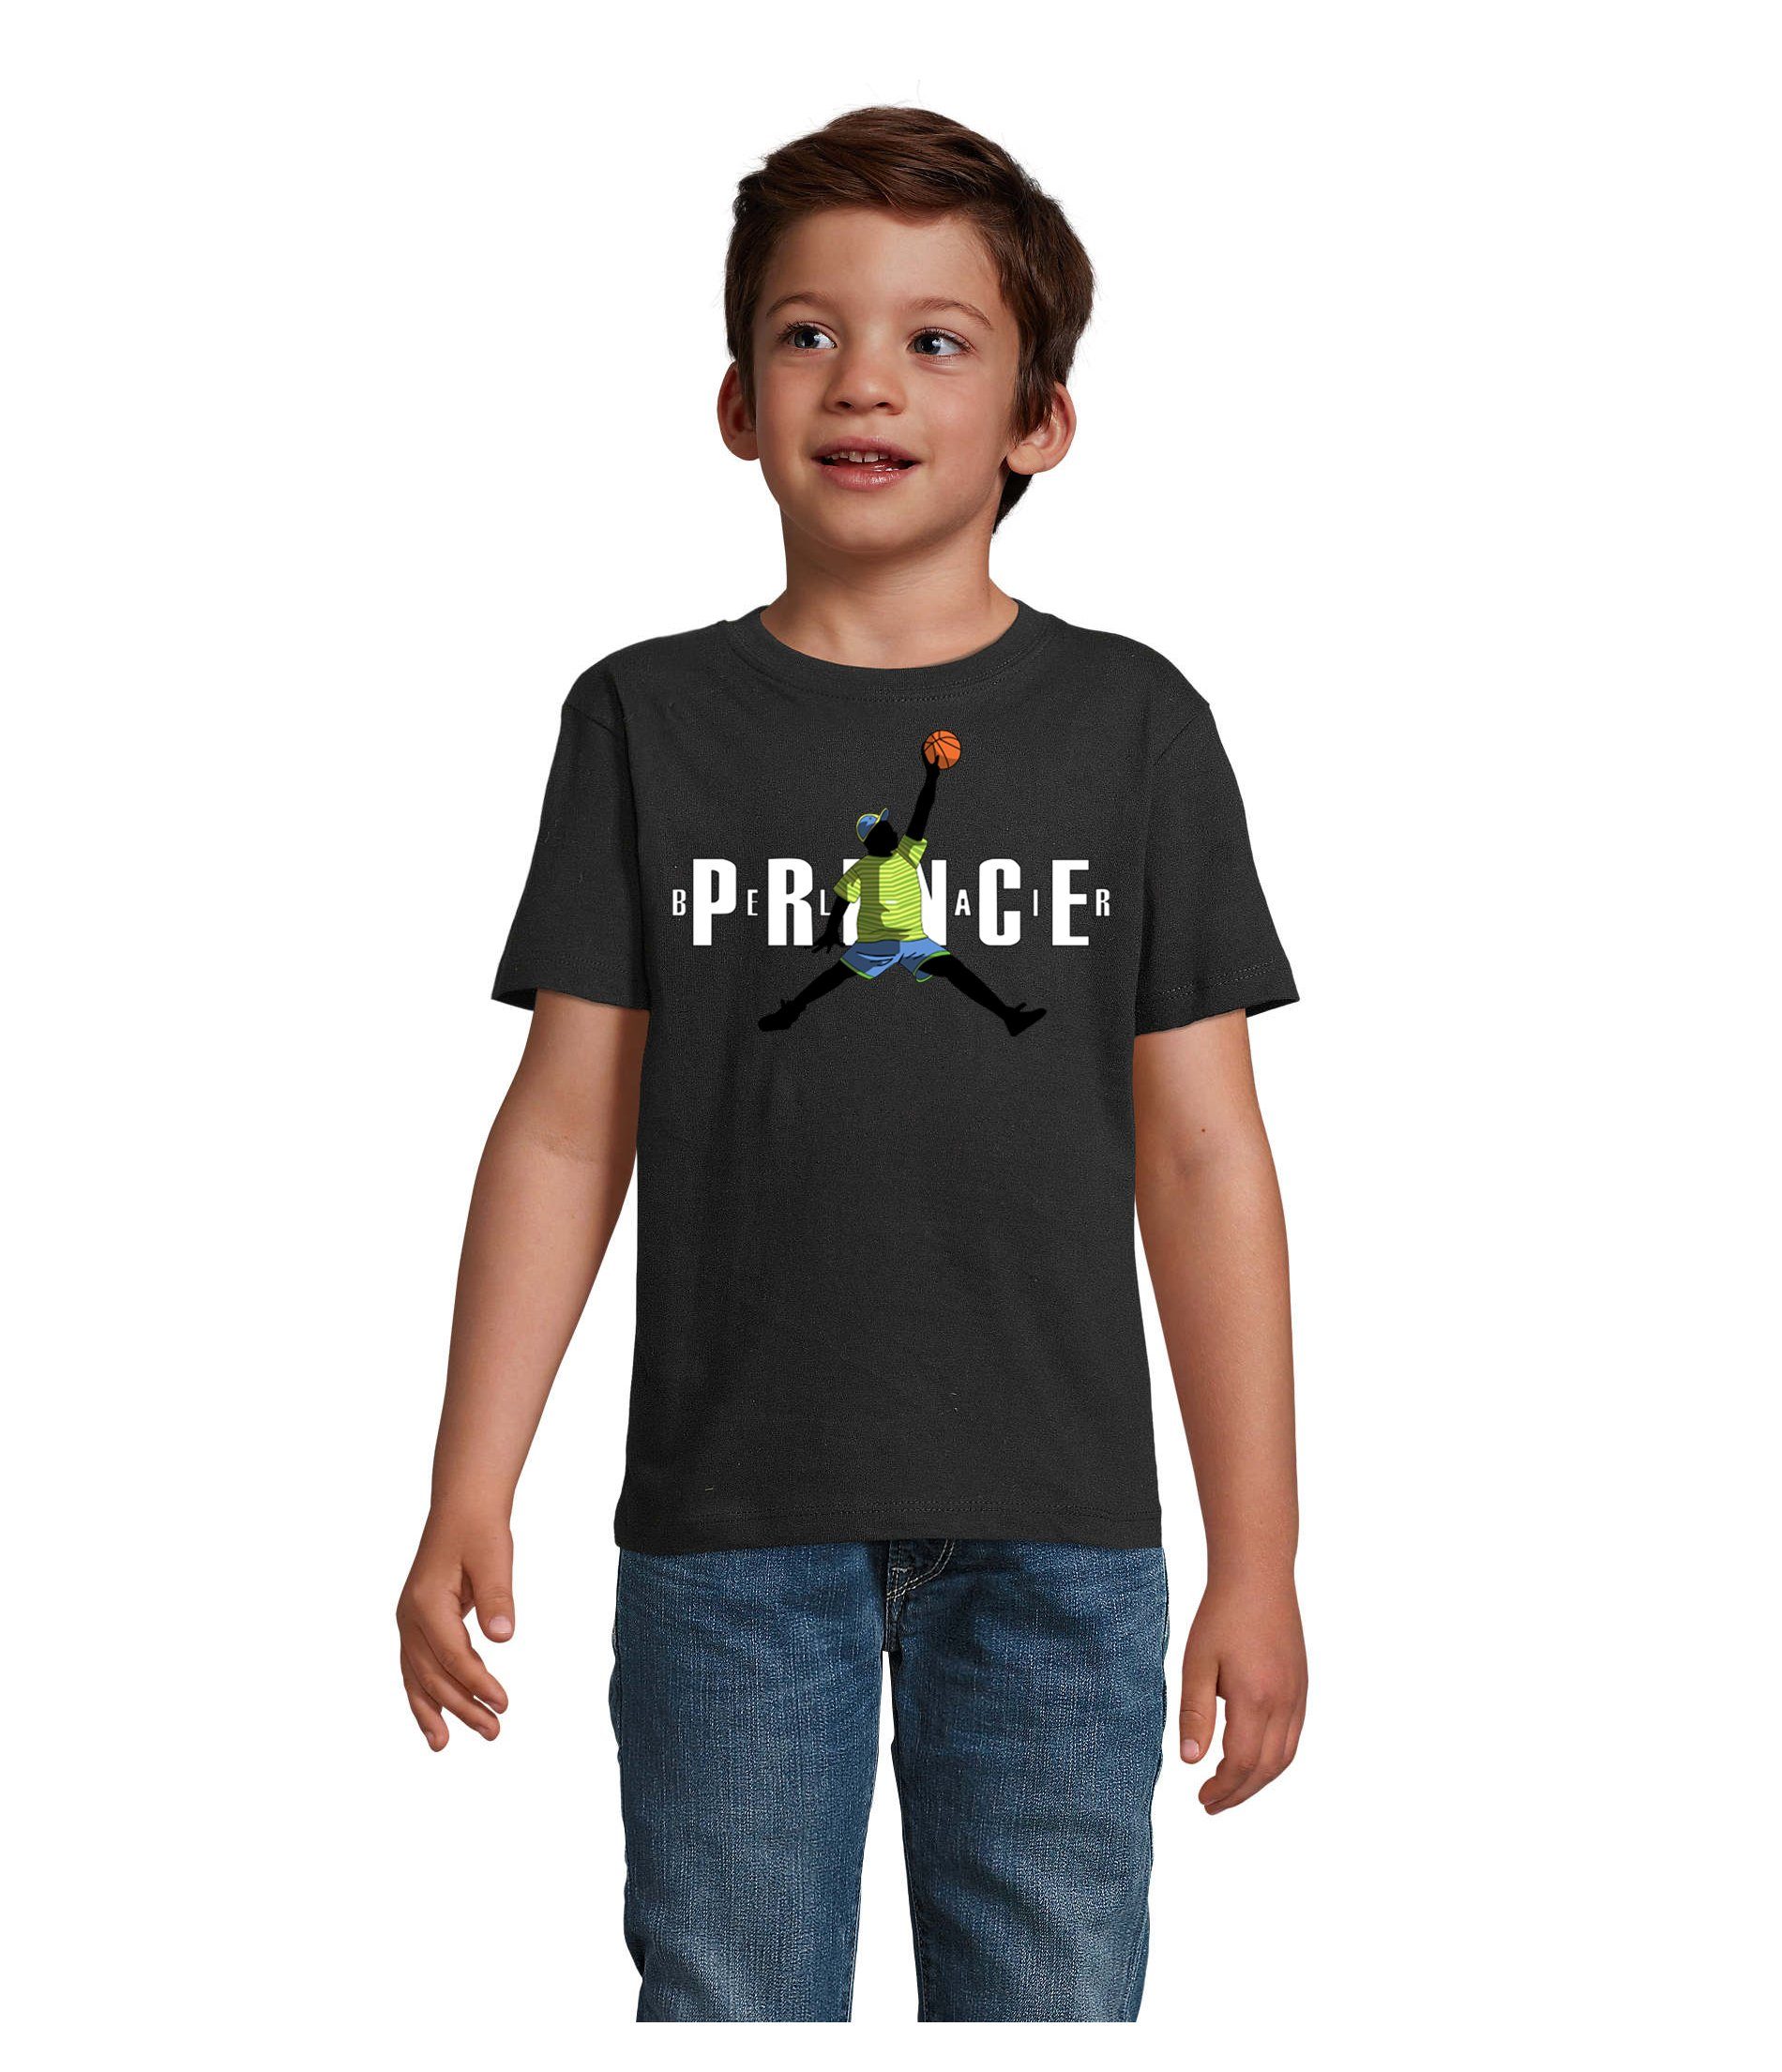 Blondie & Brownie T-Shirt Kinder Jungen & Mädchen Fresh Prince Bel Air Basketball in vielen Farben